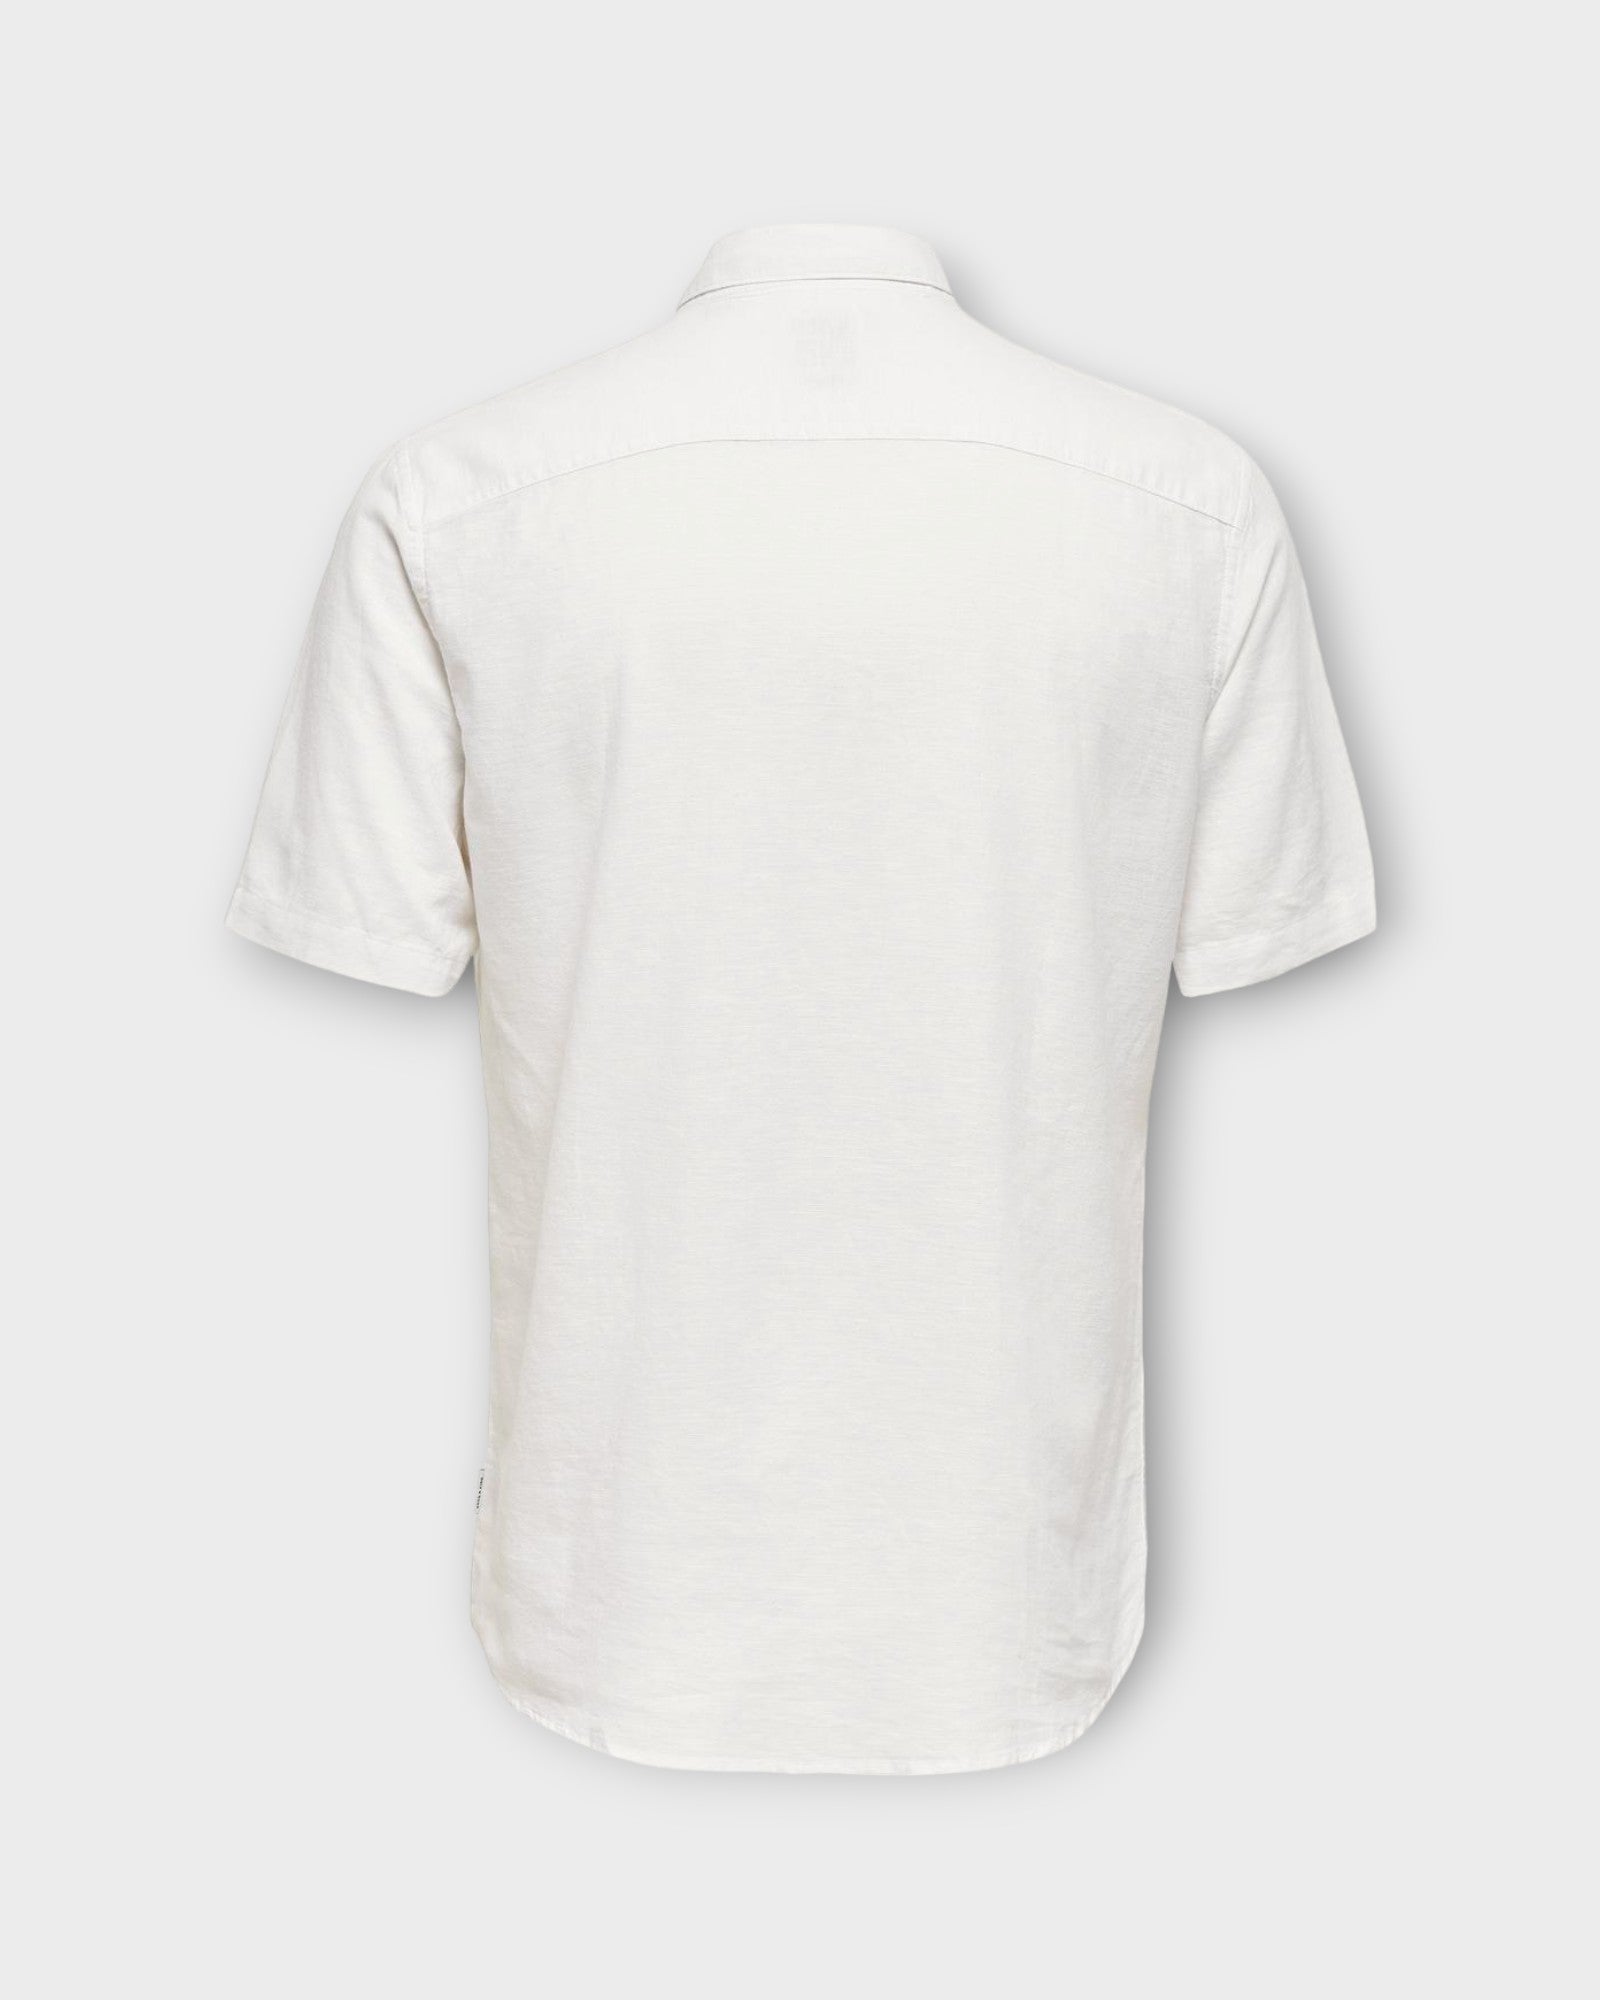 Caiden SS Solid Linen Shirt White fra Only and Sons. Kortærmet hvid hørskjorte til mænd. Her set bagfra.